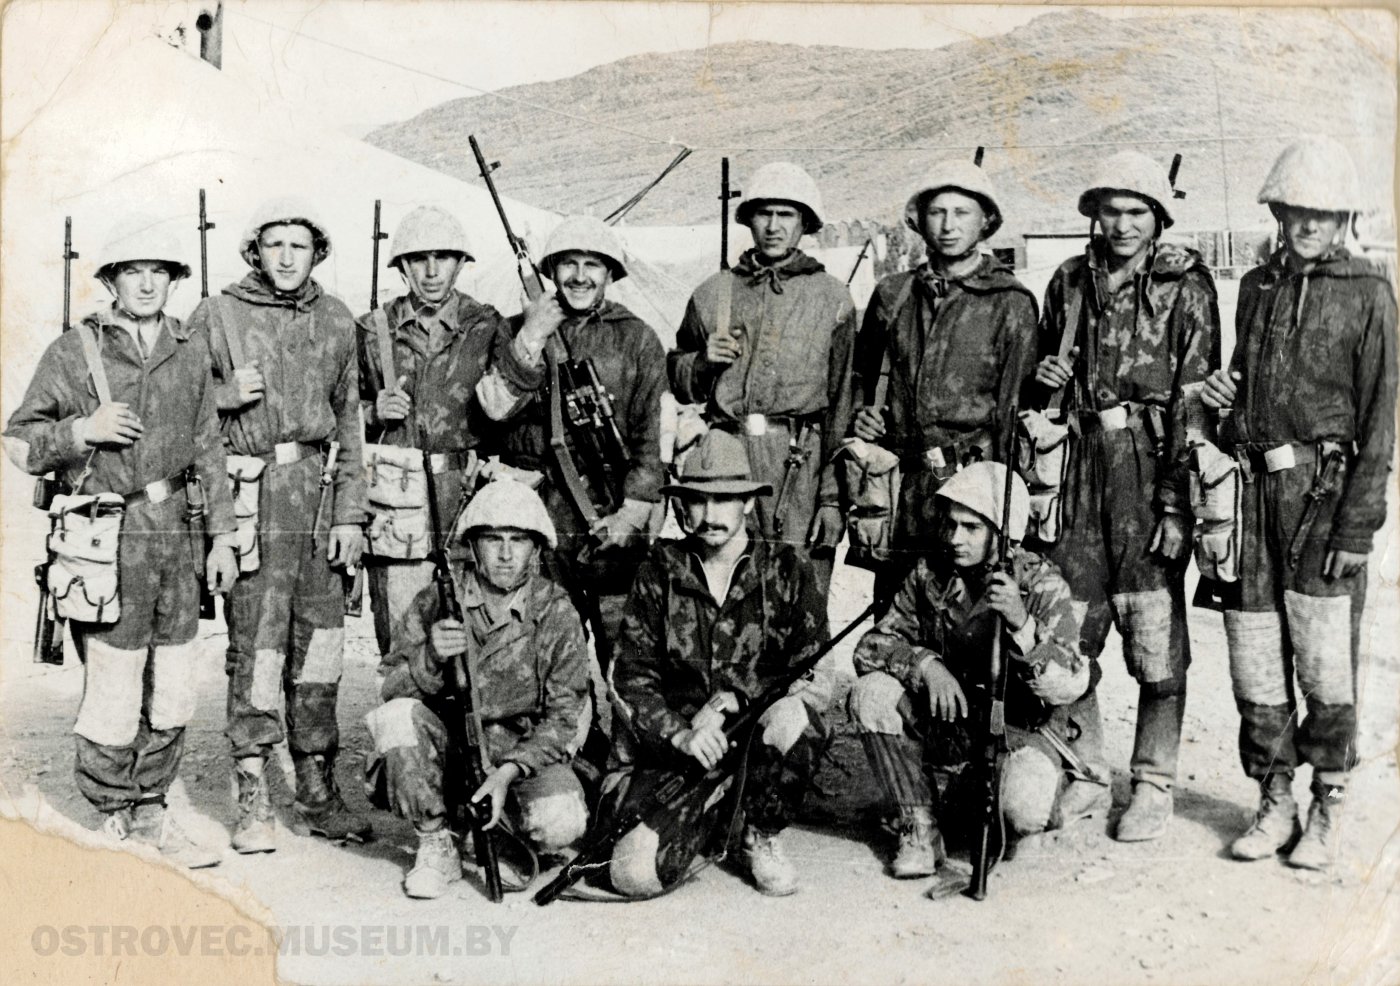 11 солдат на фоне палаток и гор. Афганистан, 1985 г.